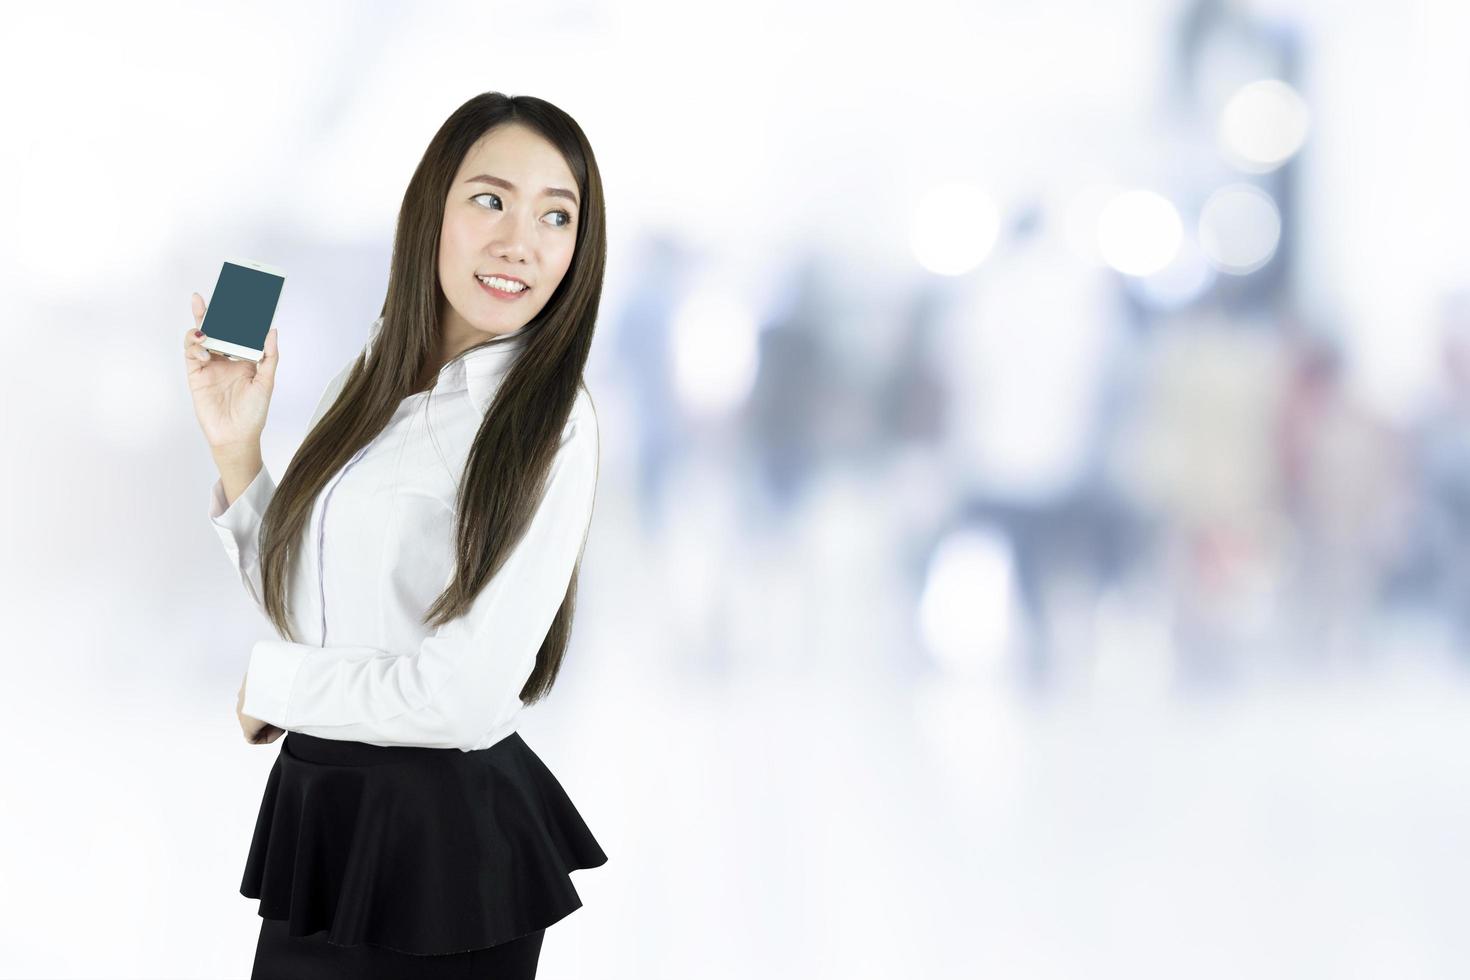 donna d'affari asiatica sorridente, con in mano uno smartphone con schermo vuoto su sfondo sfocato foto